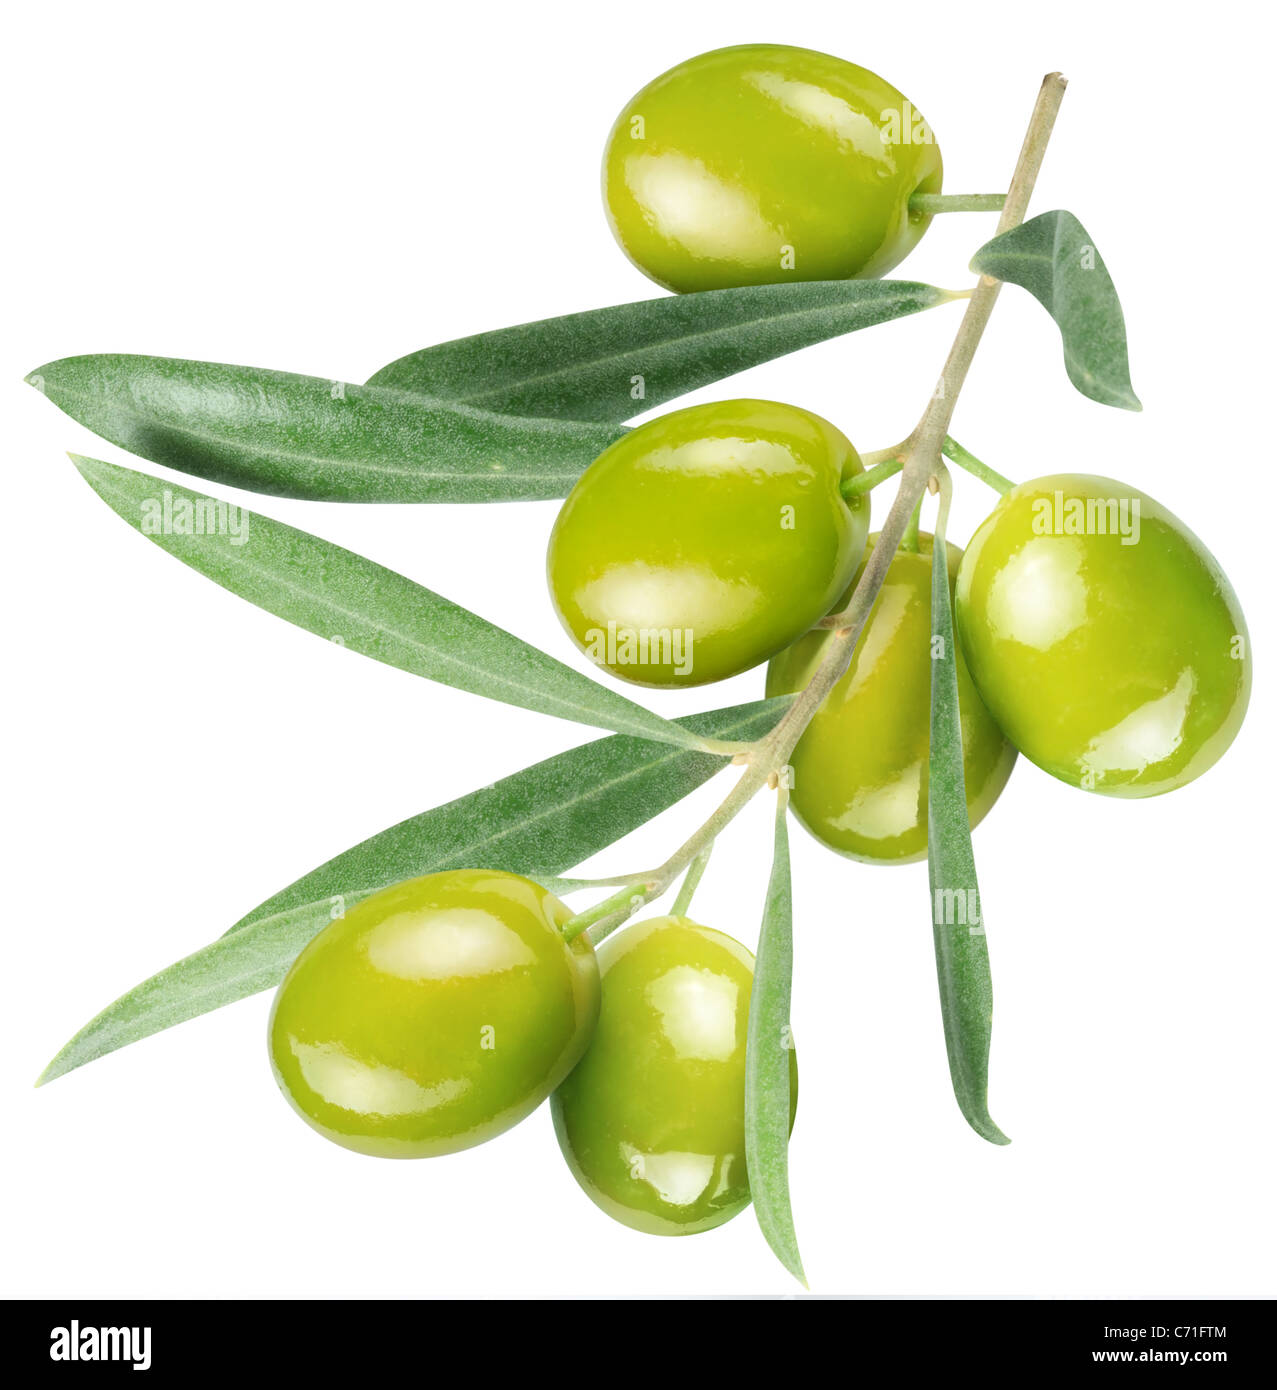 Sur la branche d'olives avec des feuilles isolées sur fond blanc. Le fichier contient un chemin d'accès à couper. Banque D'Images